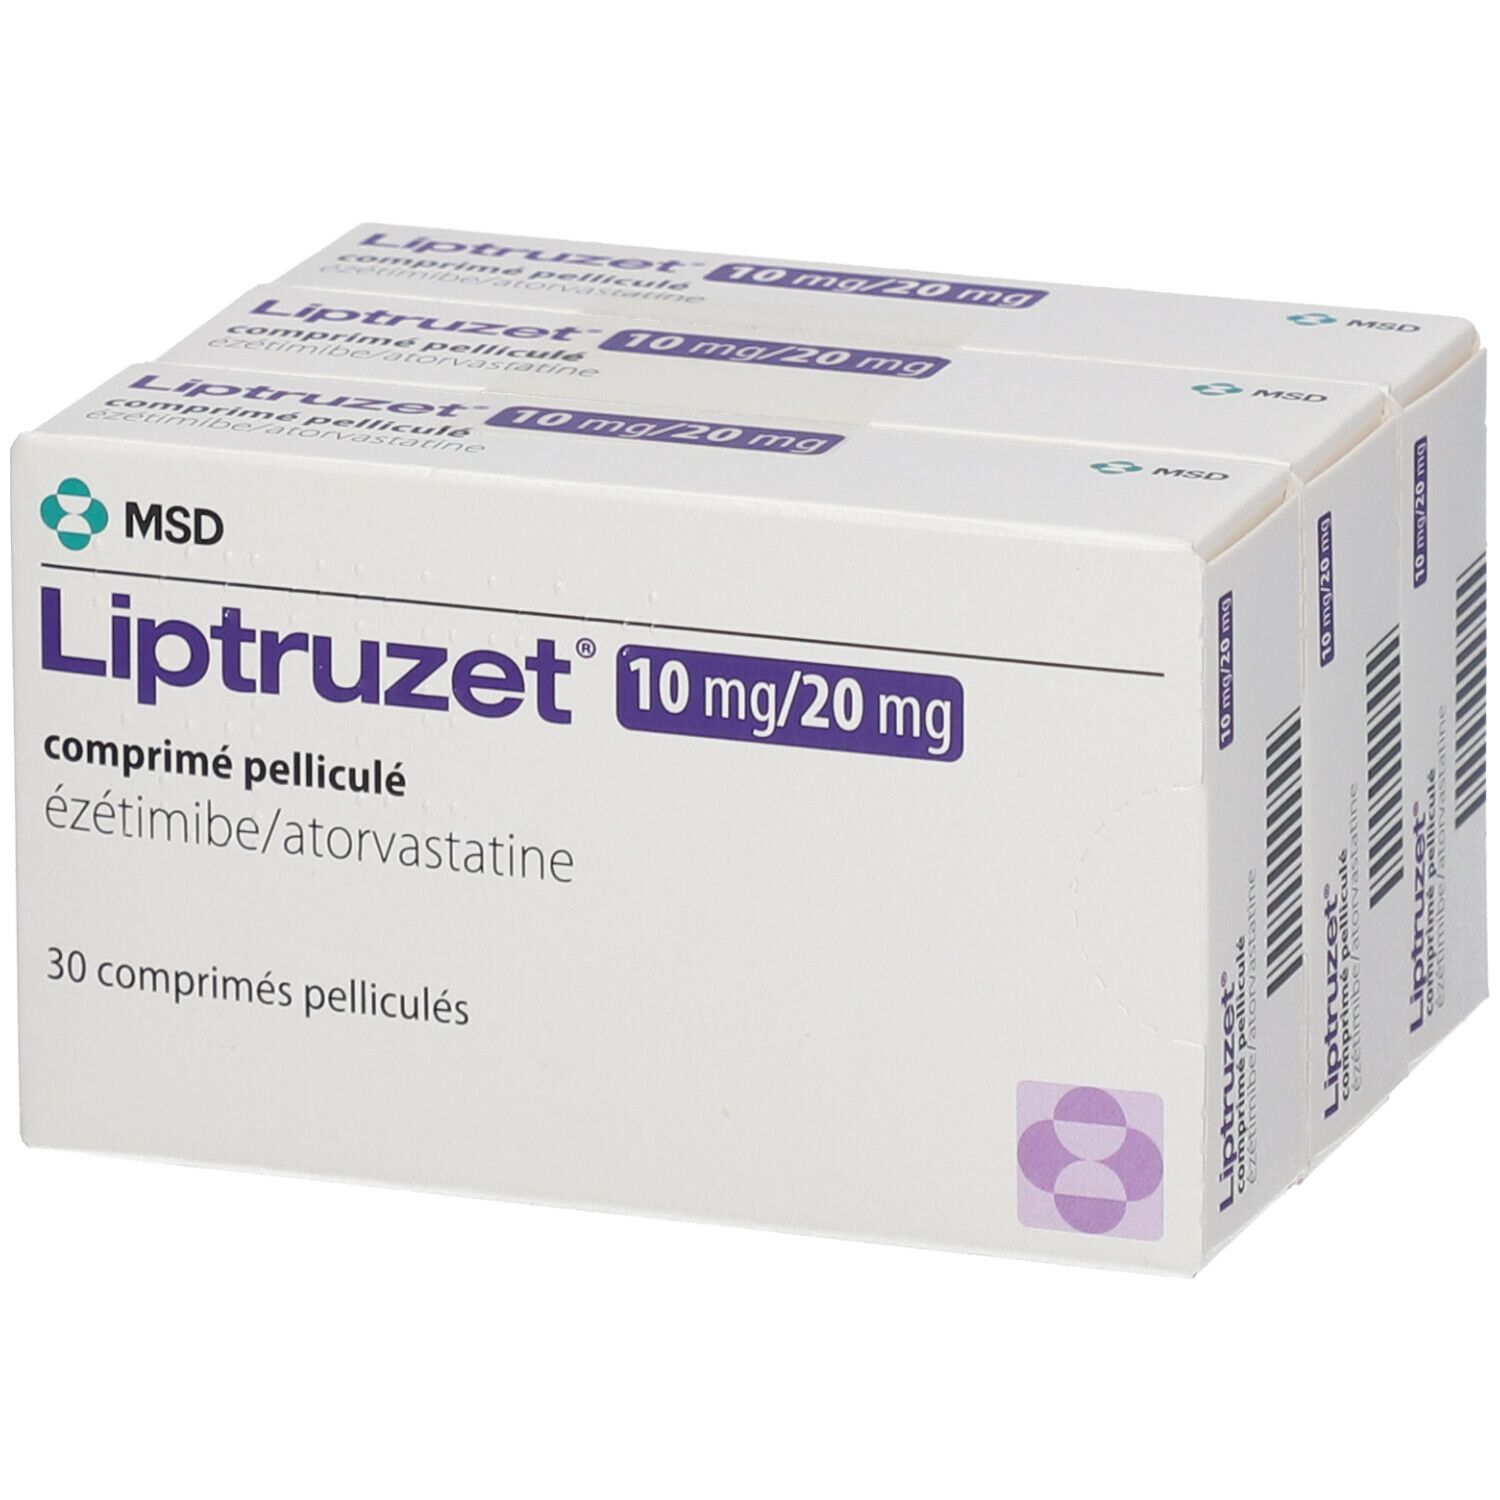 Liptruzet 10 mg/20 mg